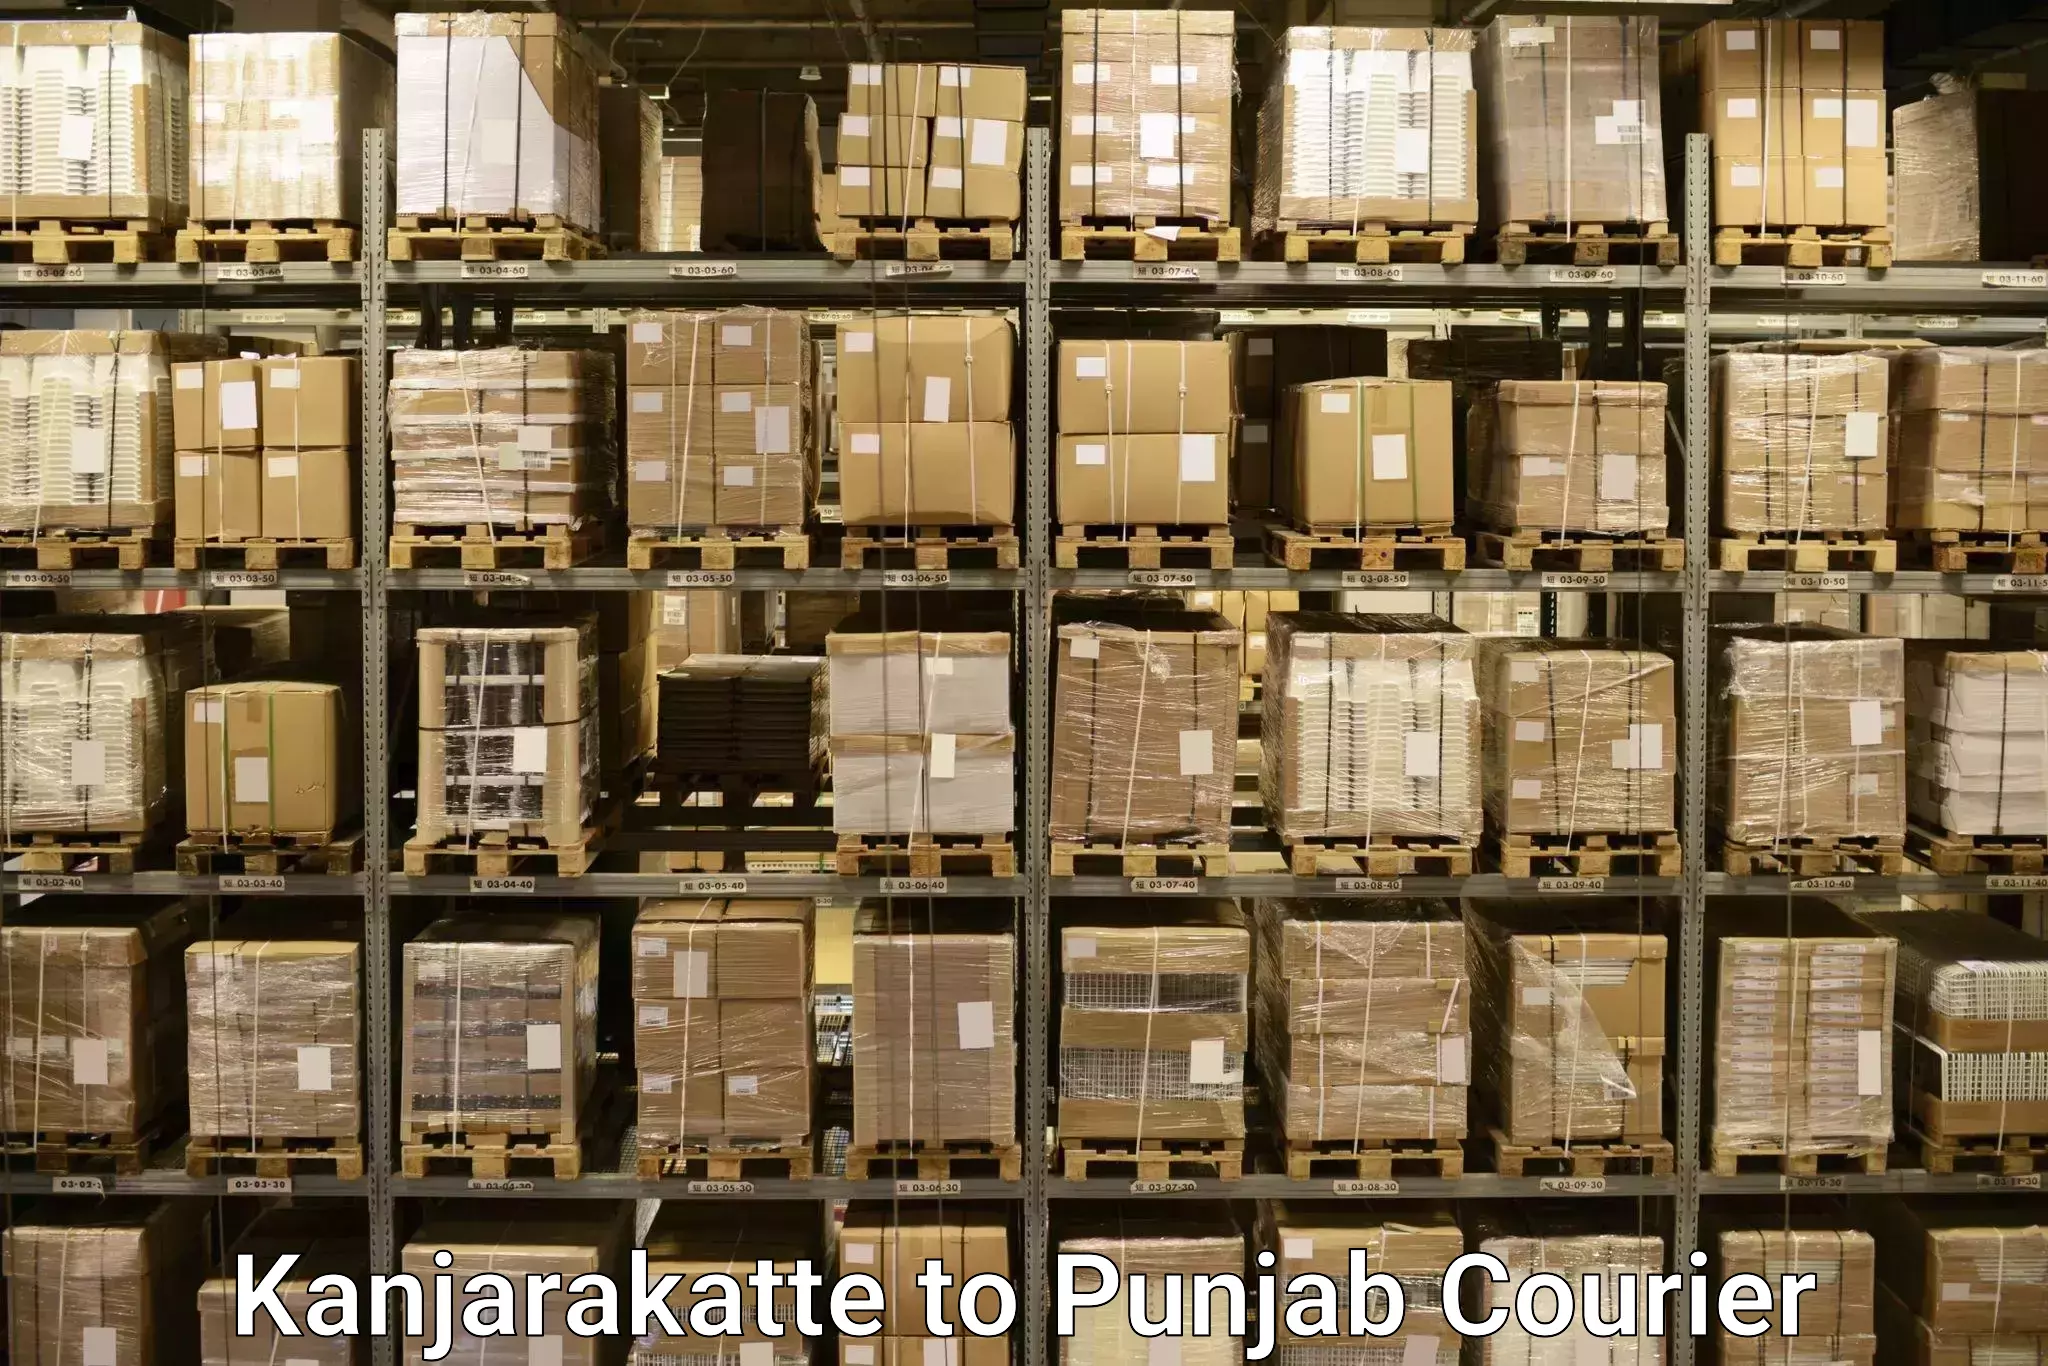 Luggage transport company Kanjarakatte to Punjab